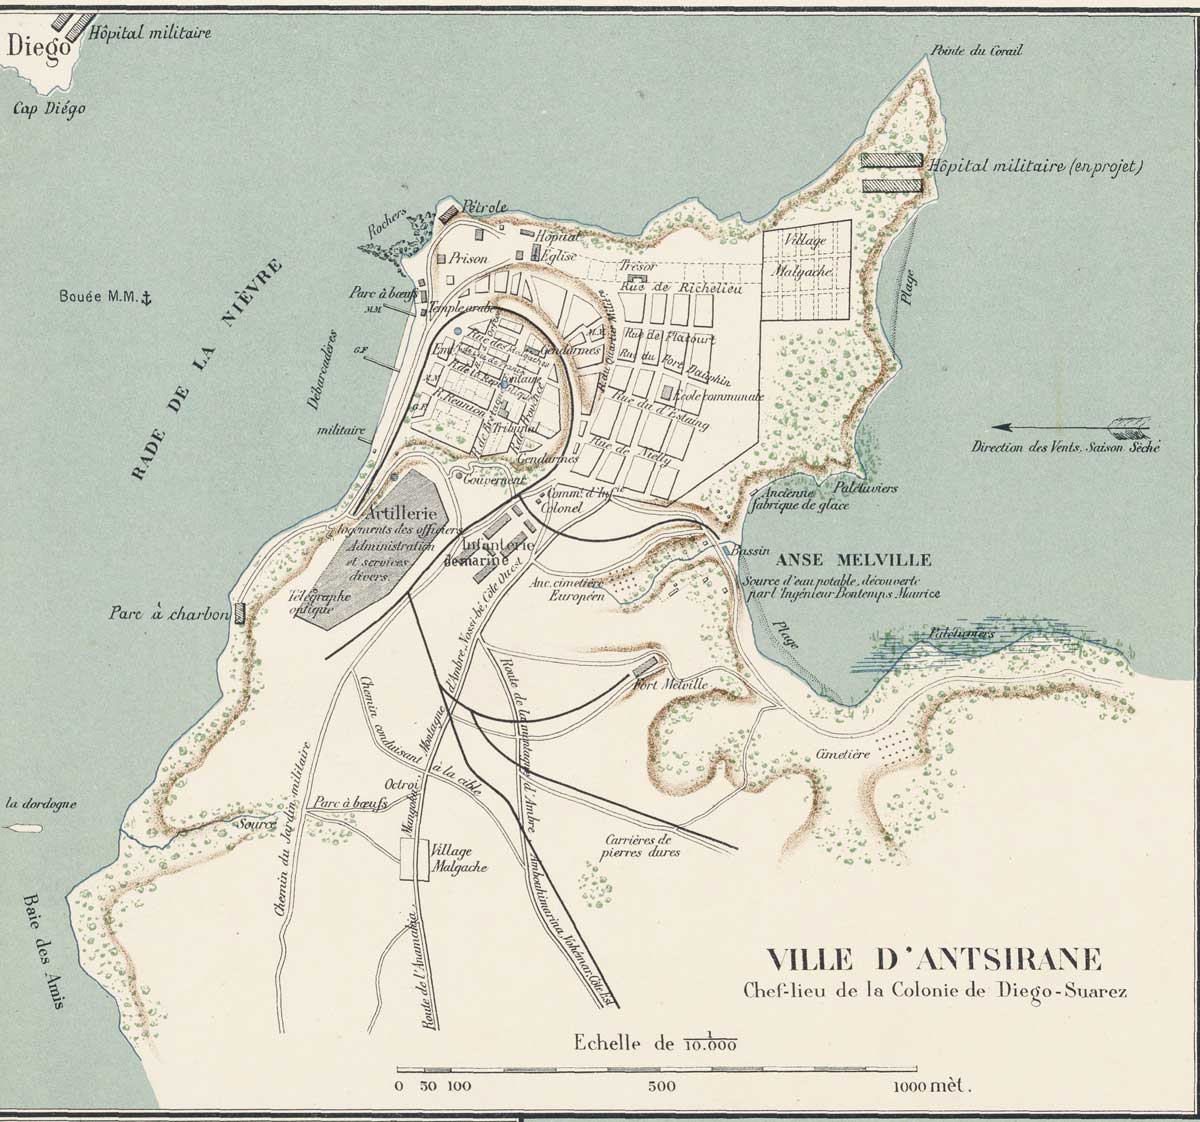 Plan d’alignement de Diego Suarez en 1890